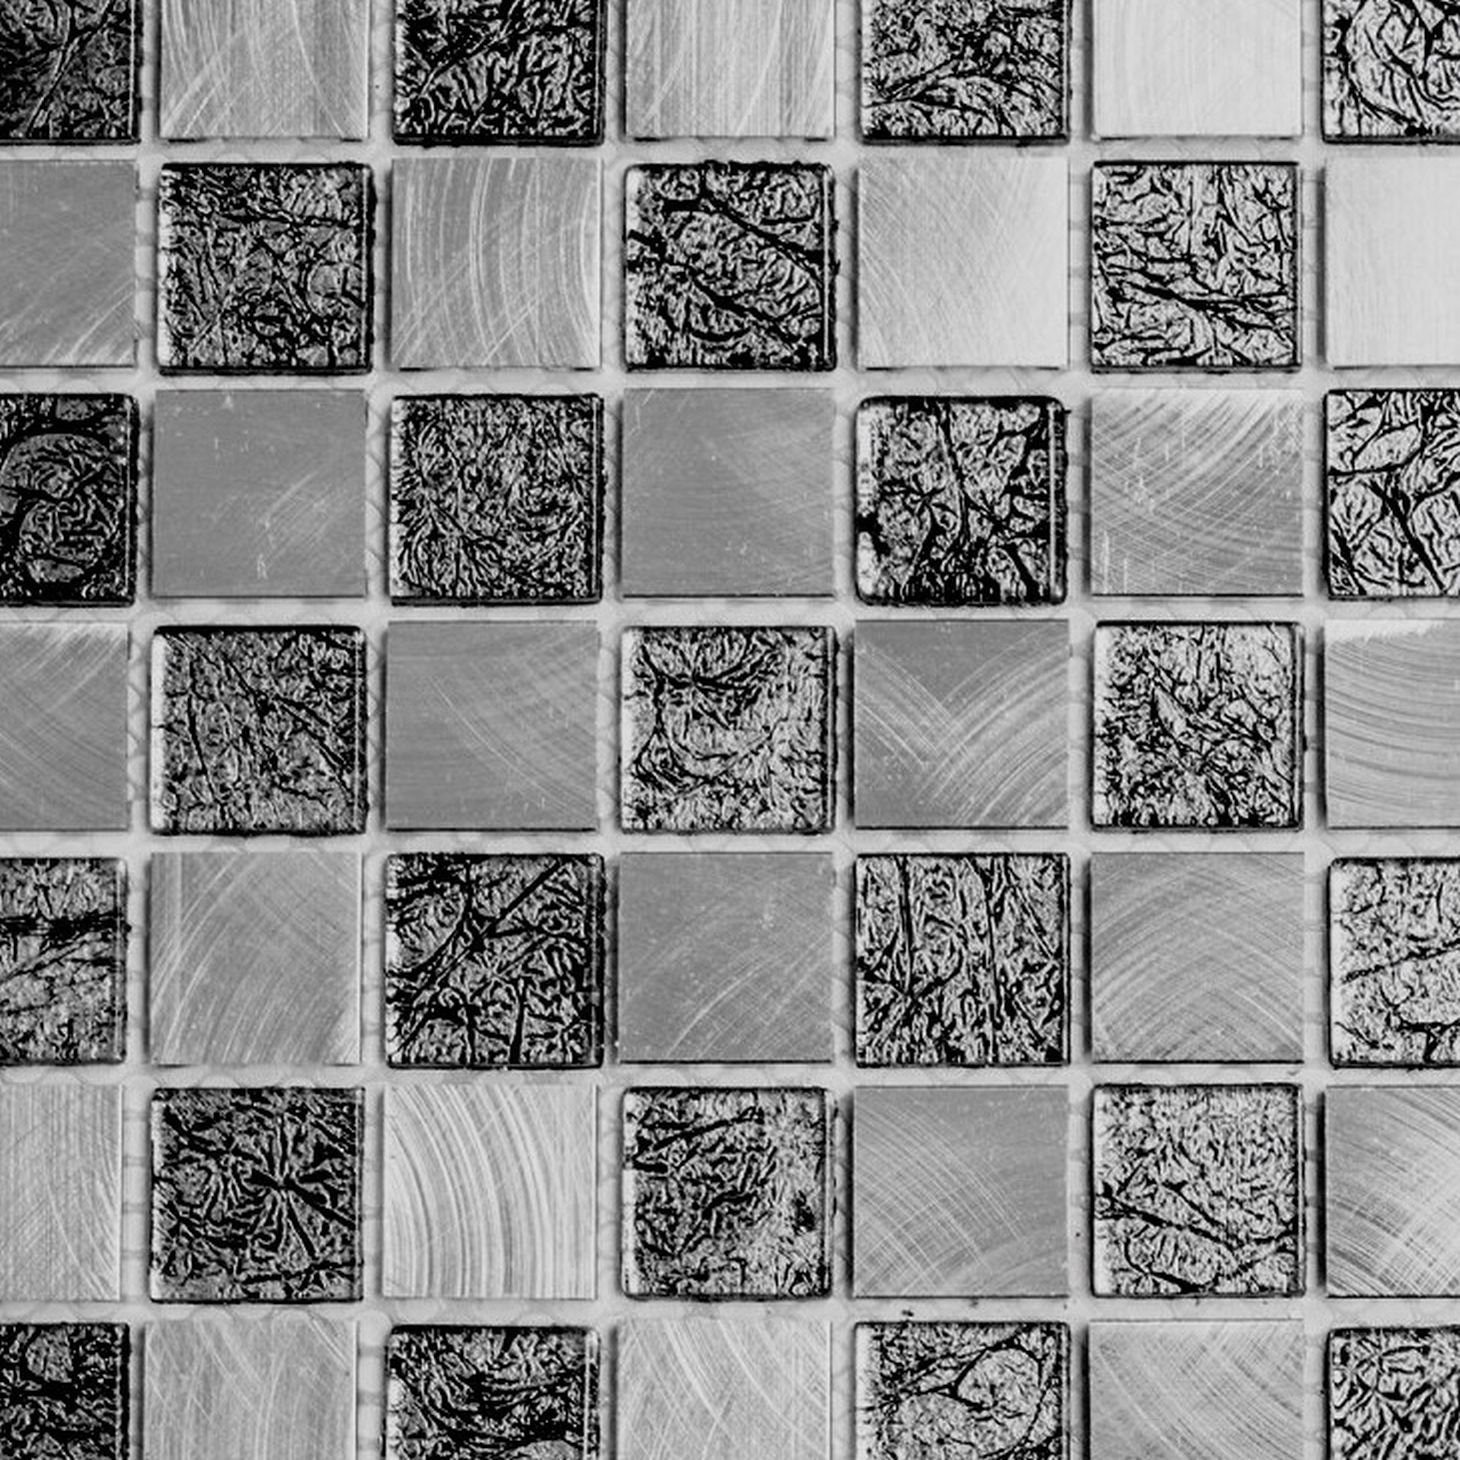 Mosani Mosaikfliesen Mosaik Fliese Alum Glasmosaik schachbrett schwarz anthrazit silber | Fliesen